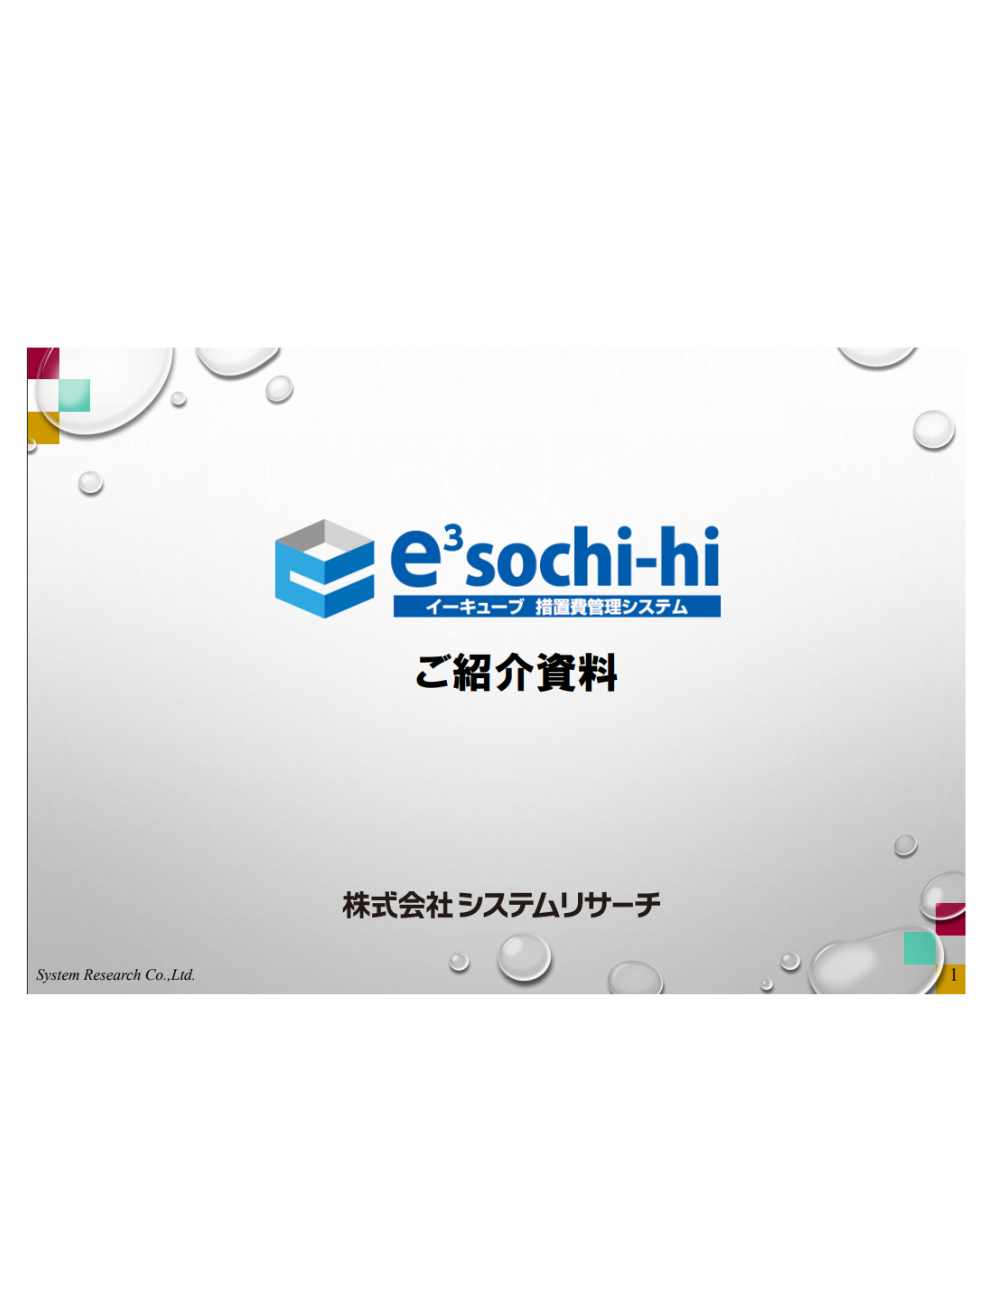 download_e3sochi-hi.png